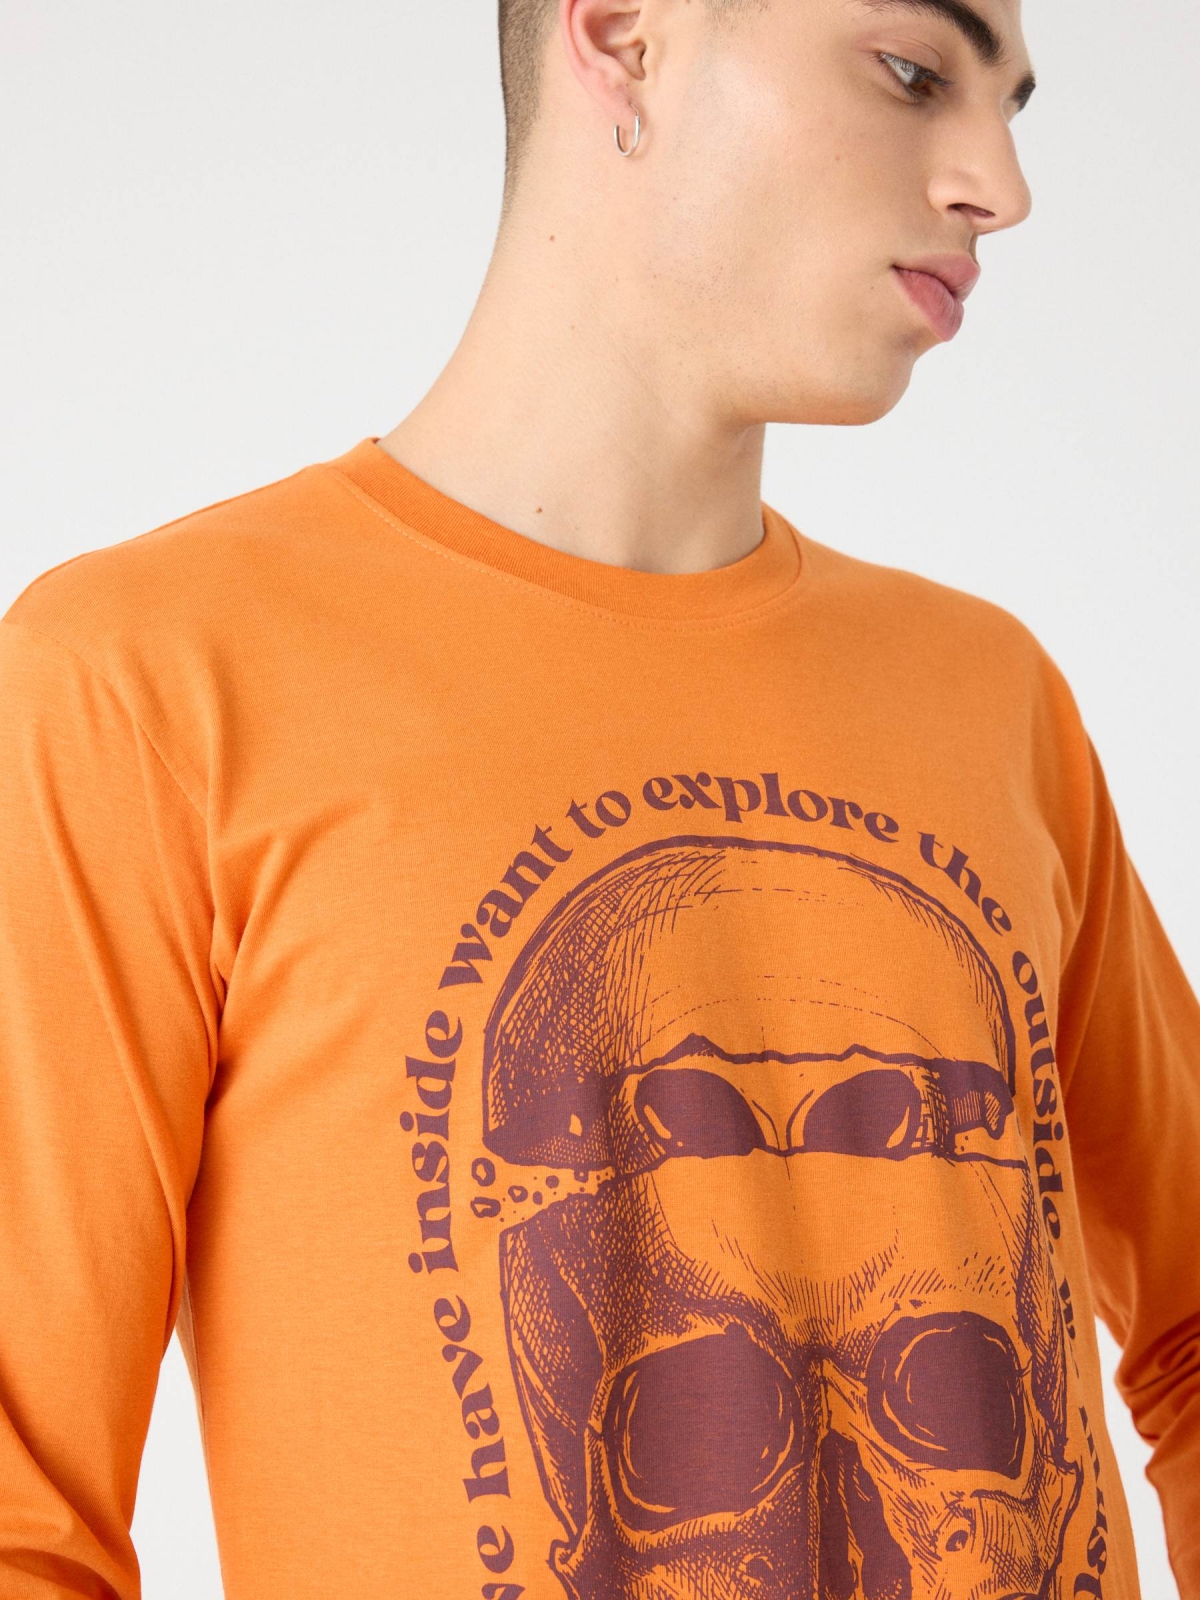 T-shirt de estampagem de crânios alienígenas terracota vista detalhe